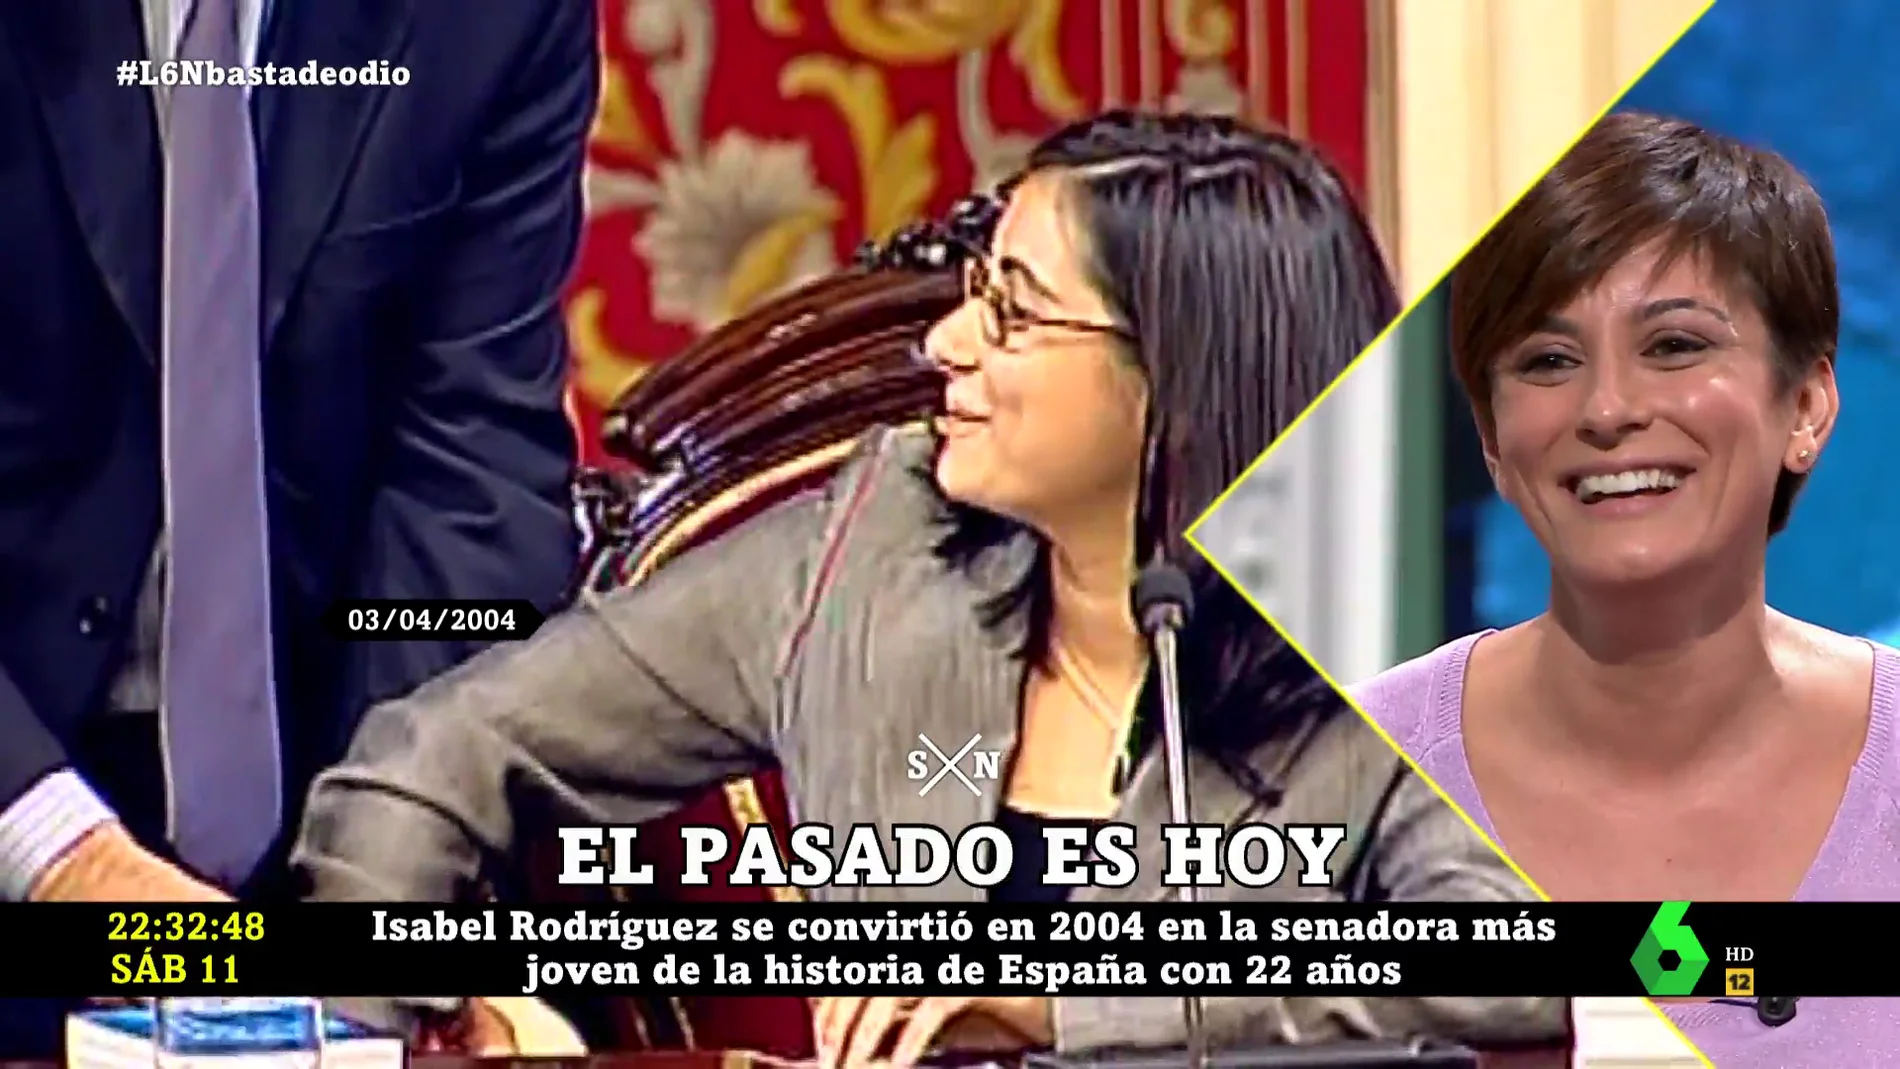 La ministra portavoz Isabel Rodríguez no puede contener la risa al ver sus imágenes como senadora con 22 años